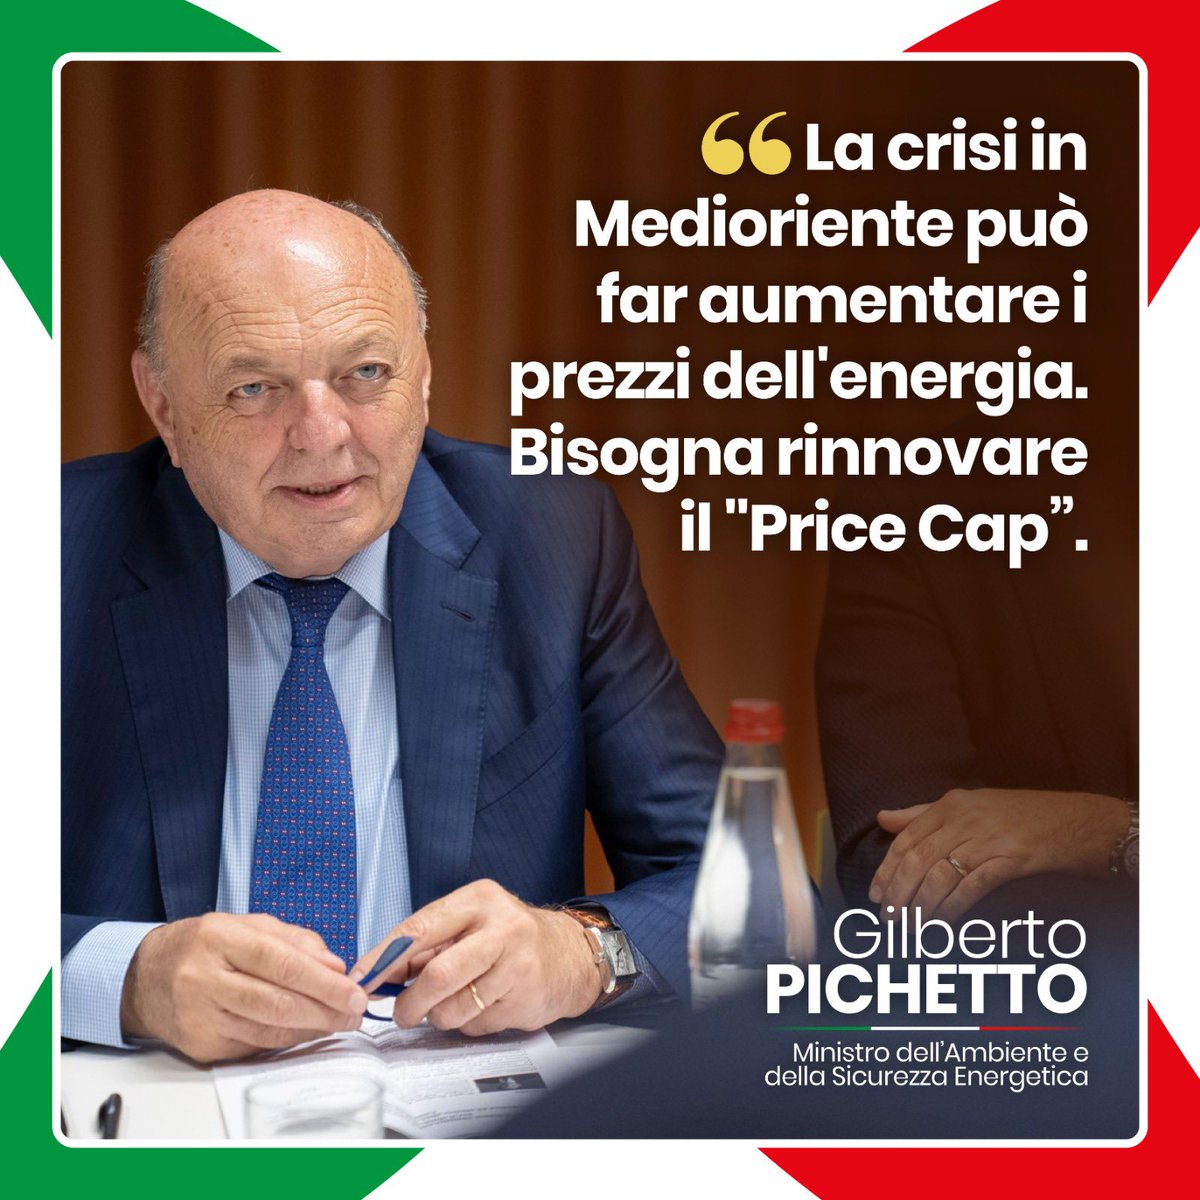 Fermiamo le operazioni speculative che possono far aumentare i prezzi del #Gas rinnovando il #PriceCap. 

Ho già chiesto stamattina al #ConsiglioEnergia un intervento in questa direzione. 

Può essere una clausola di garanzia per tutta l’Europa, non solo per l’Italia.

#TTE